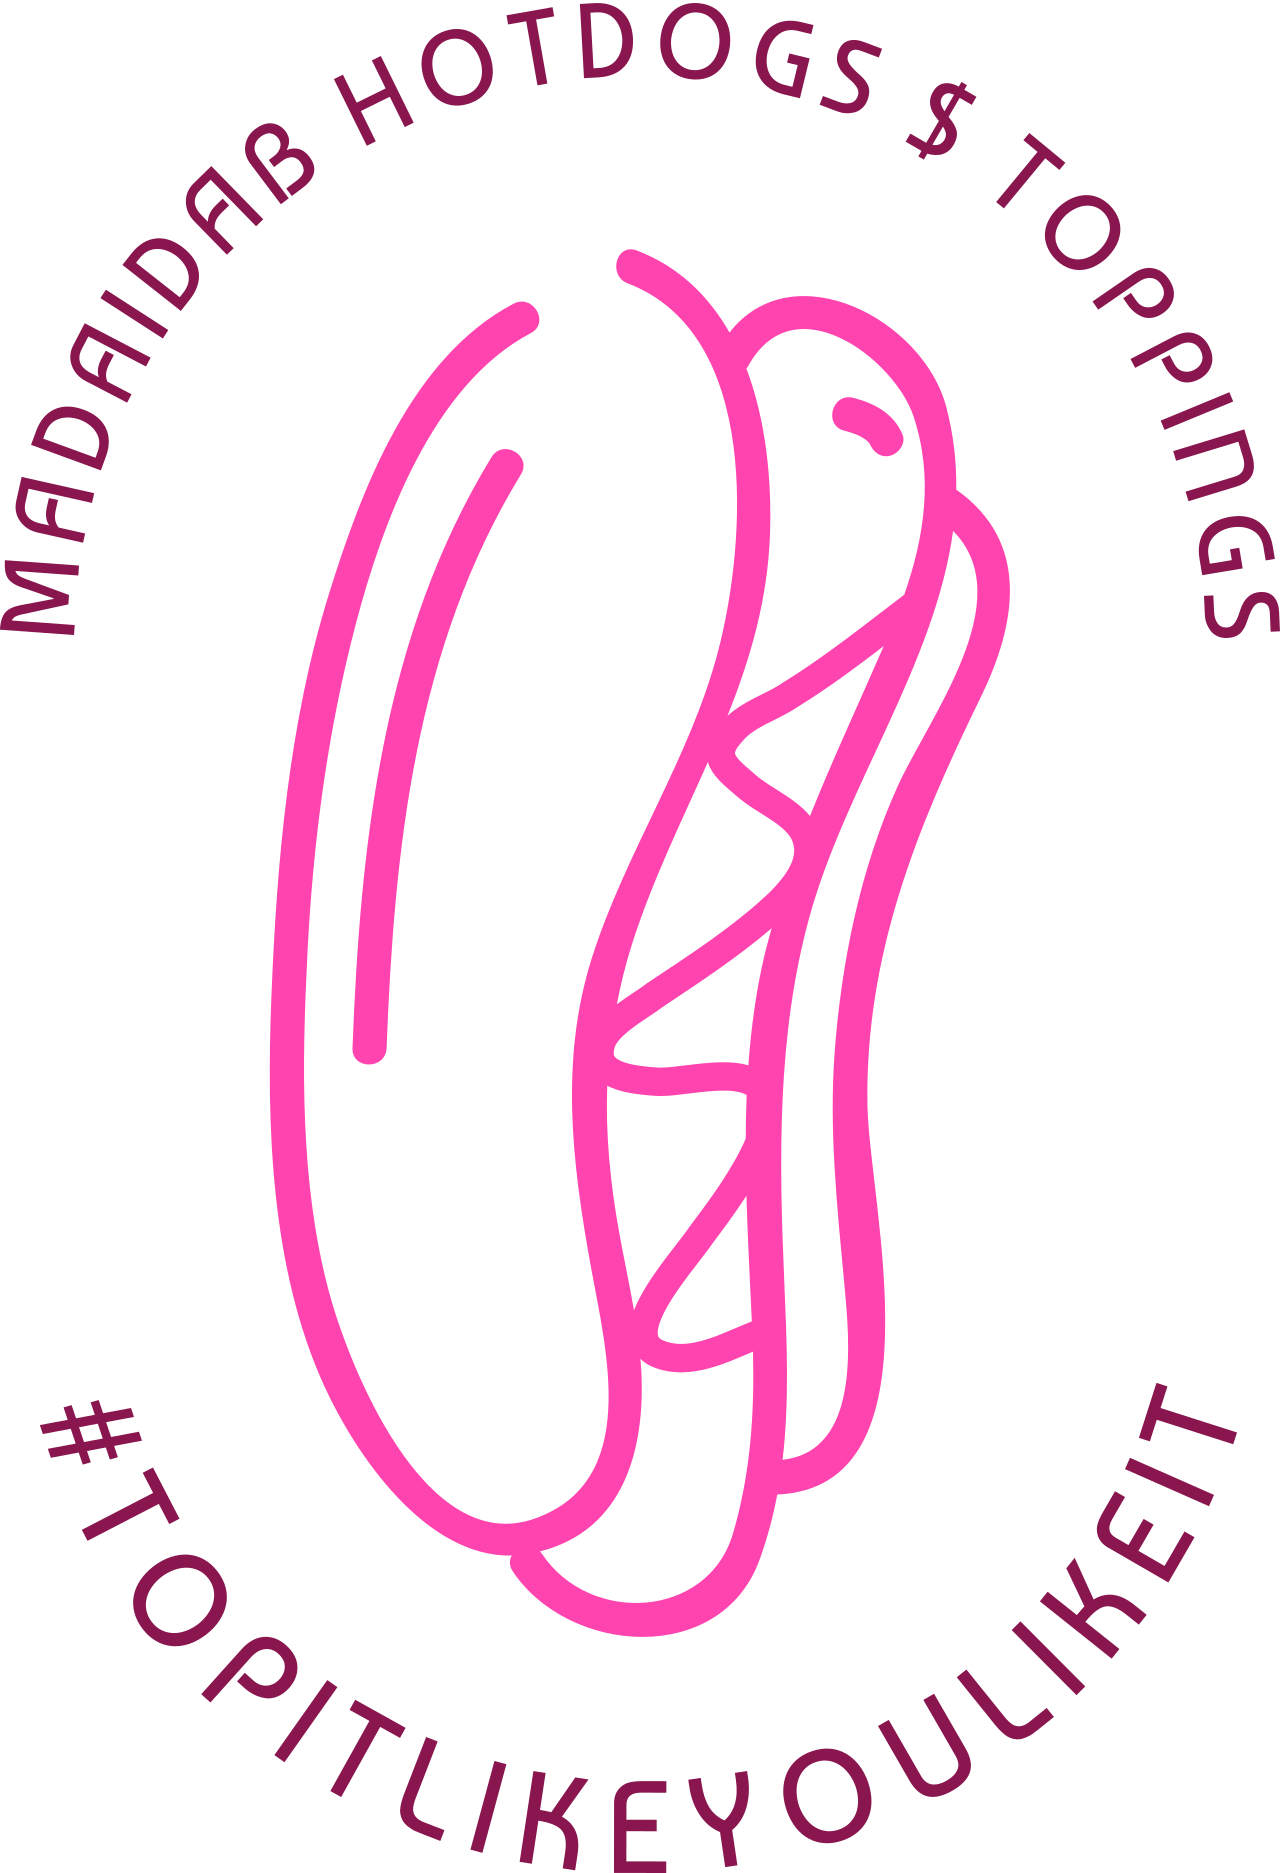 MADAIDAB HOTDOGS $ TOPPINGS's logo